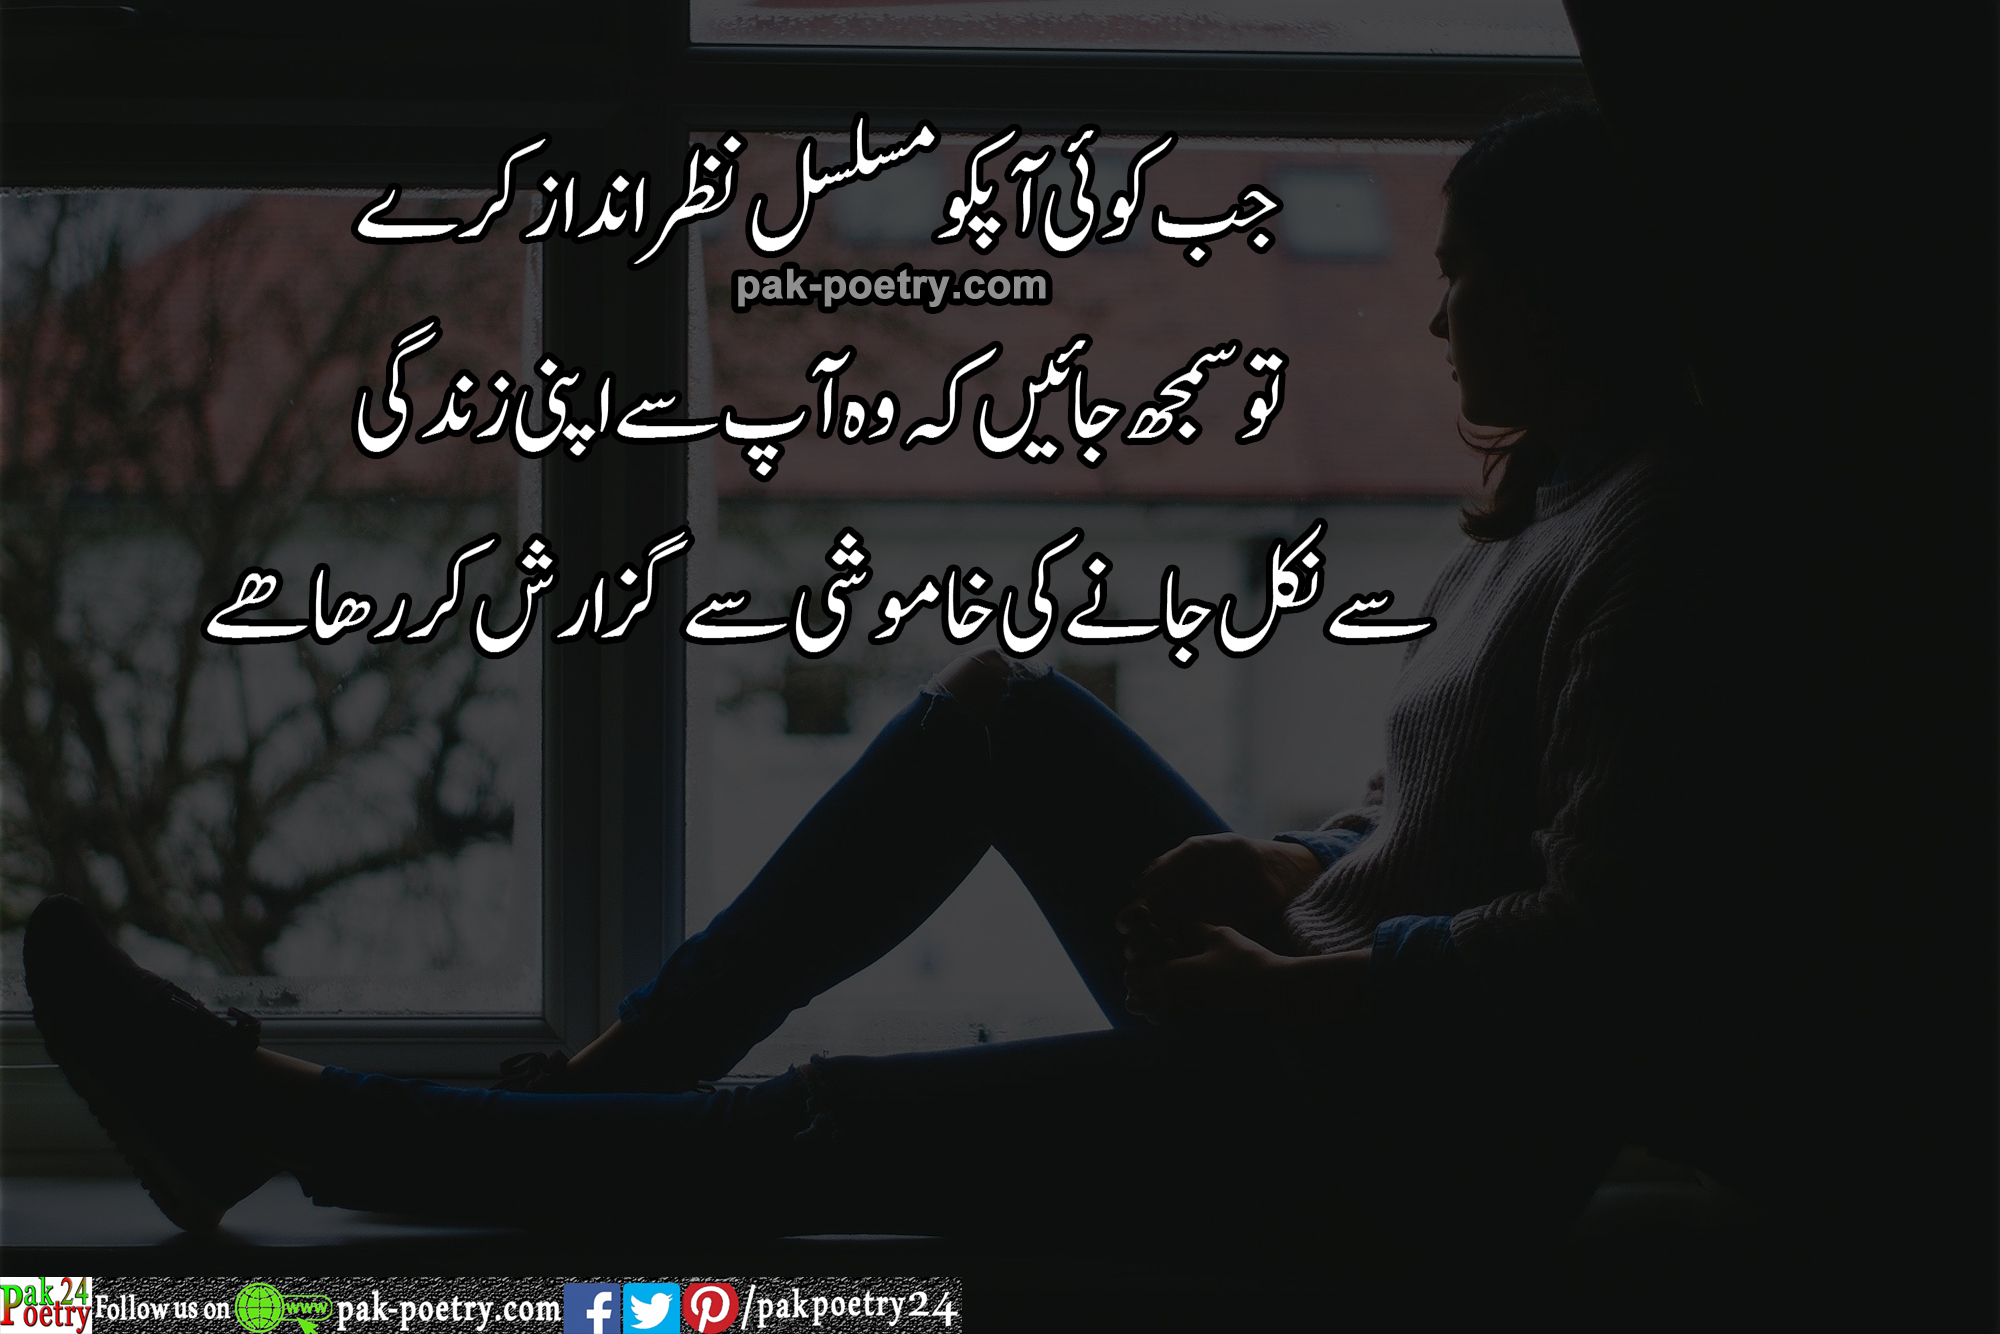 reality poetry in urdu - jb koi ap ko mselsul nzer andaz krey